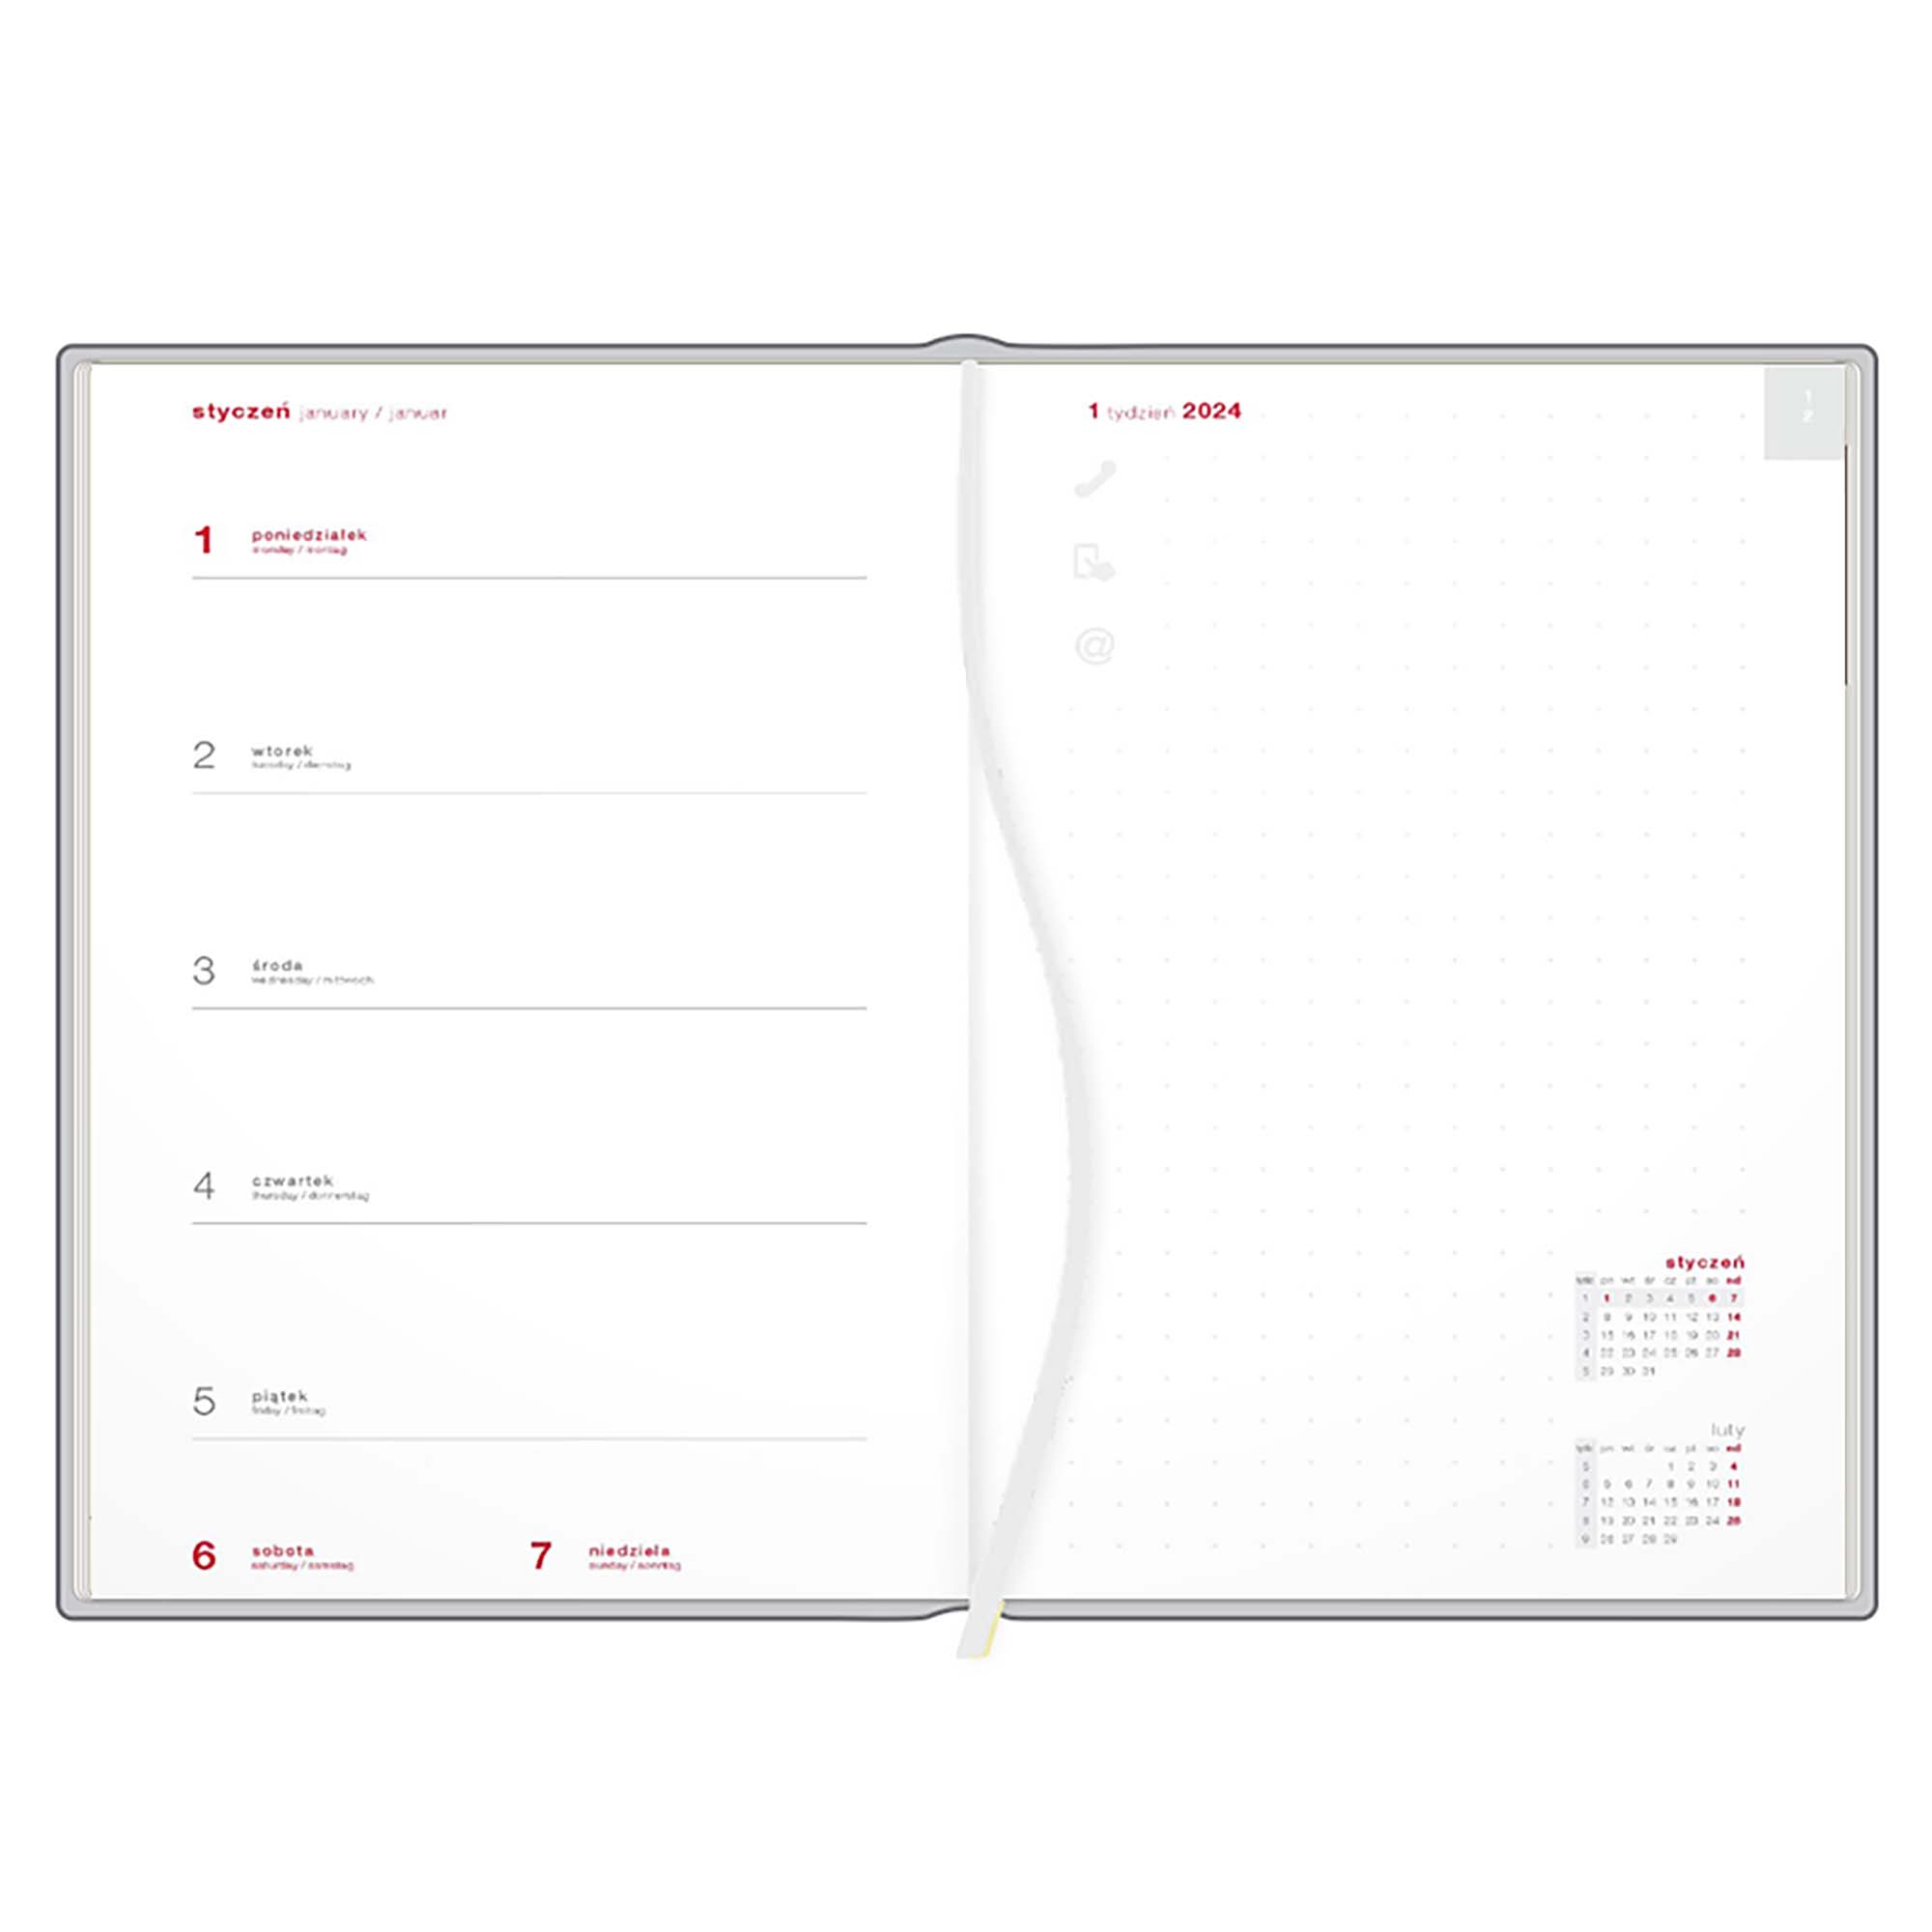 Kalendarz książkowy A5 tygodniowy z notesem, Napoli, czerwono-szary